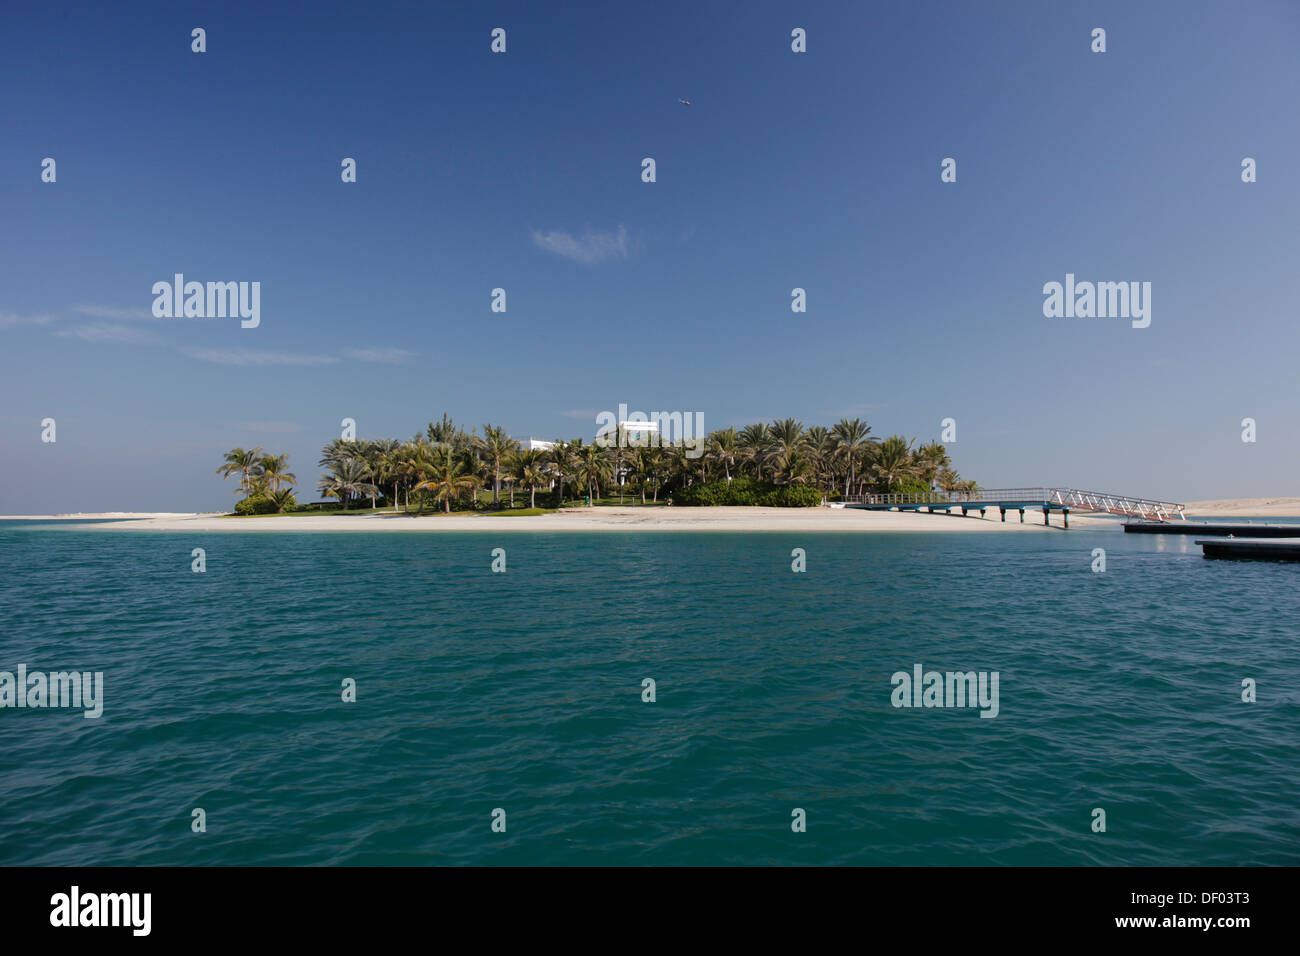 Erste Bewohnte Insel Der Kunstlichen Inselgruppe The World Oder Welt Inseln Im Besitz Der Herrscherfamilie Dubai Stockfotografie Alamy